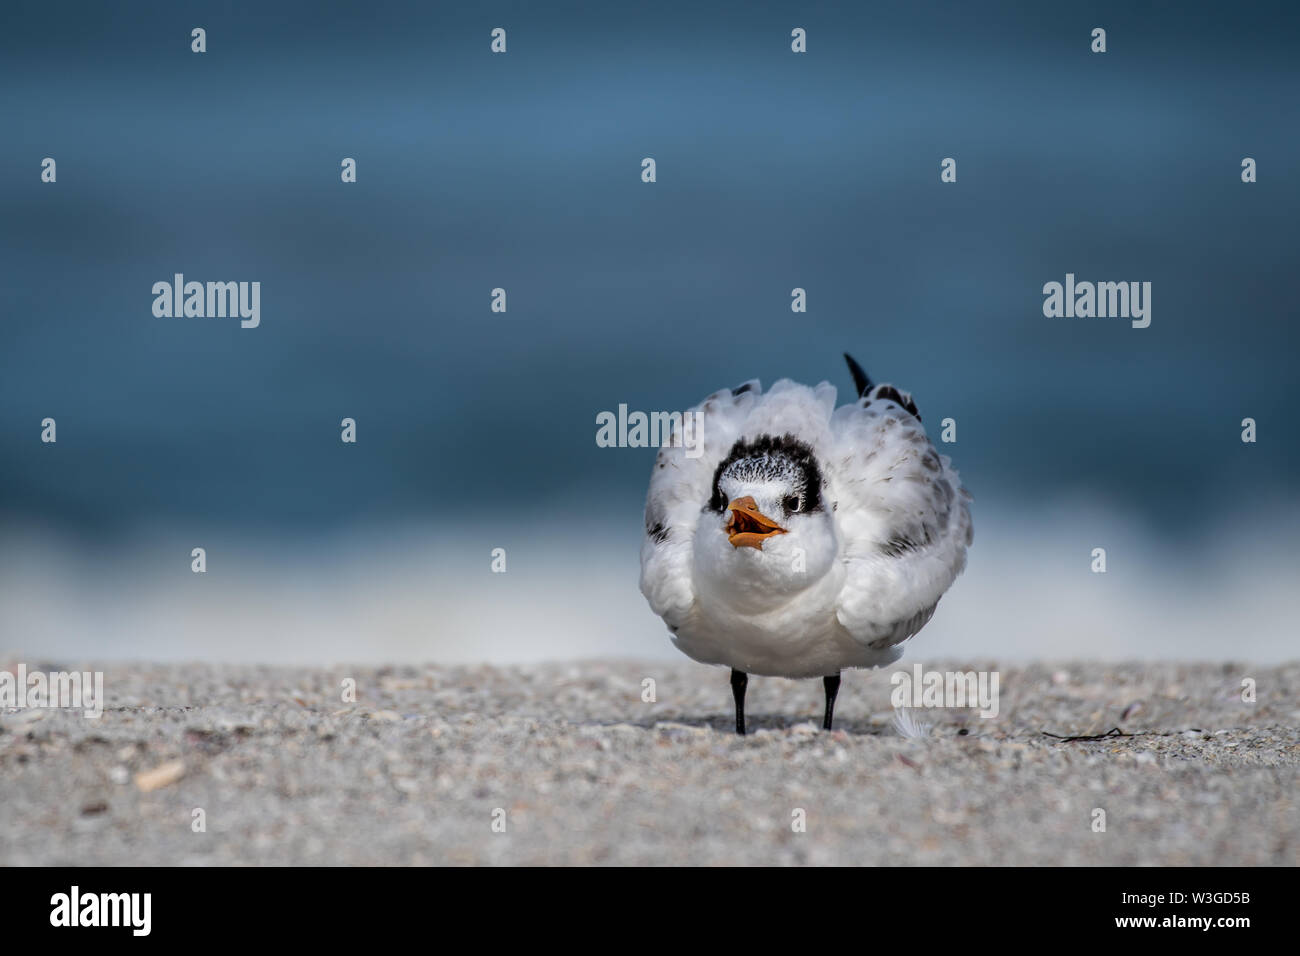 Shore bird in Florida - Royal tern on the beach Stock Photo